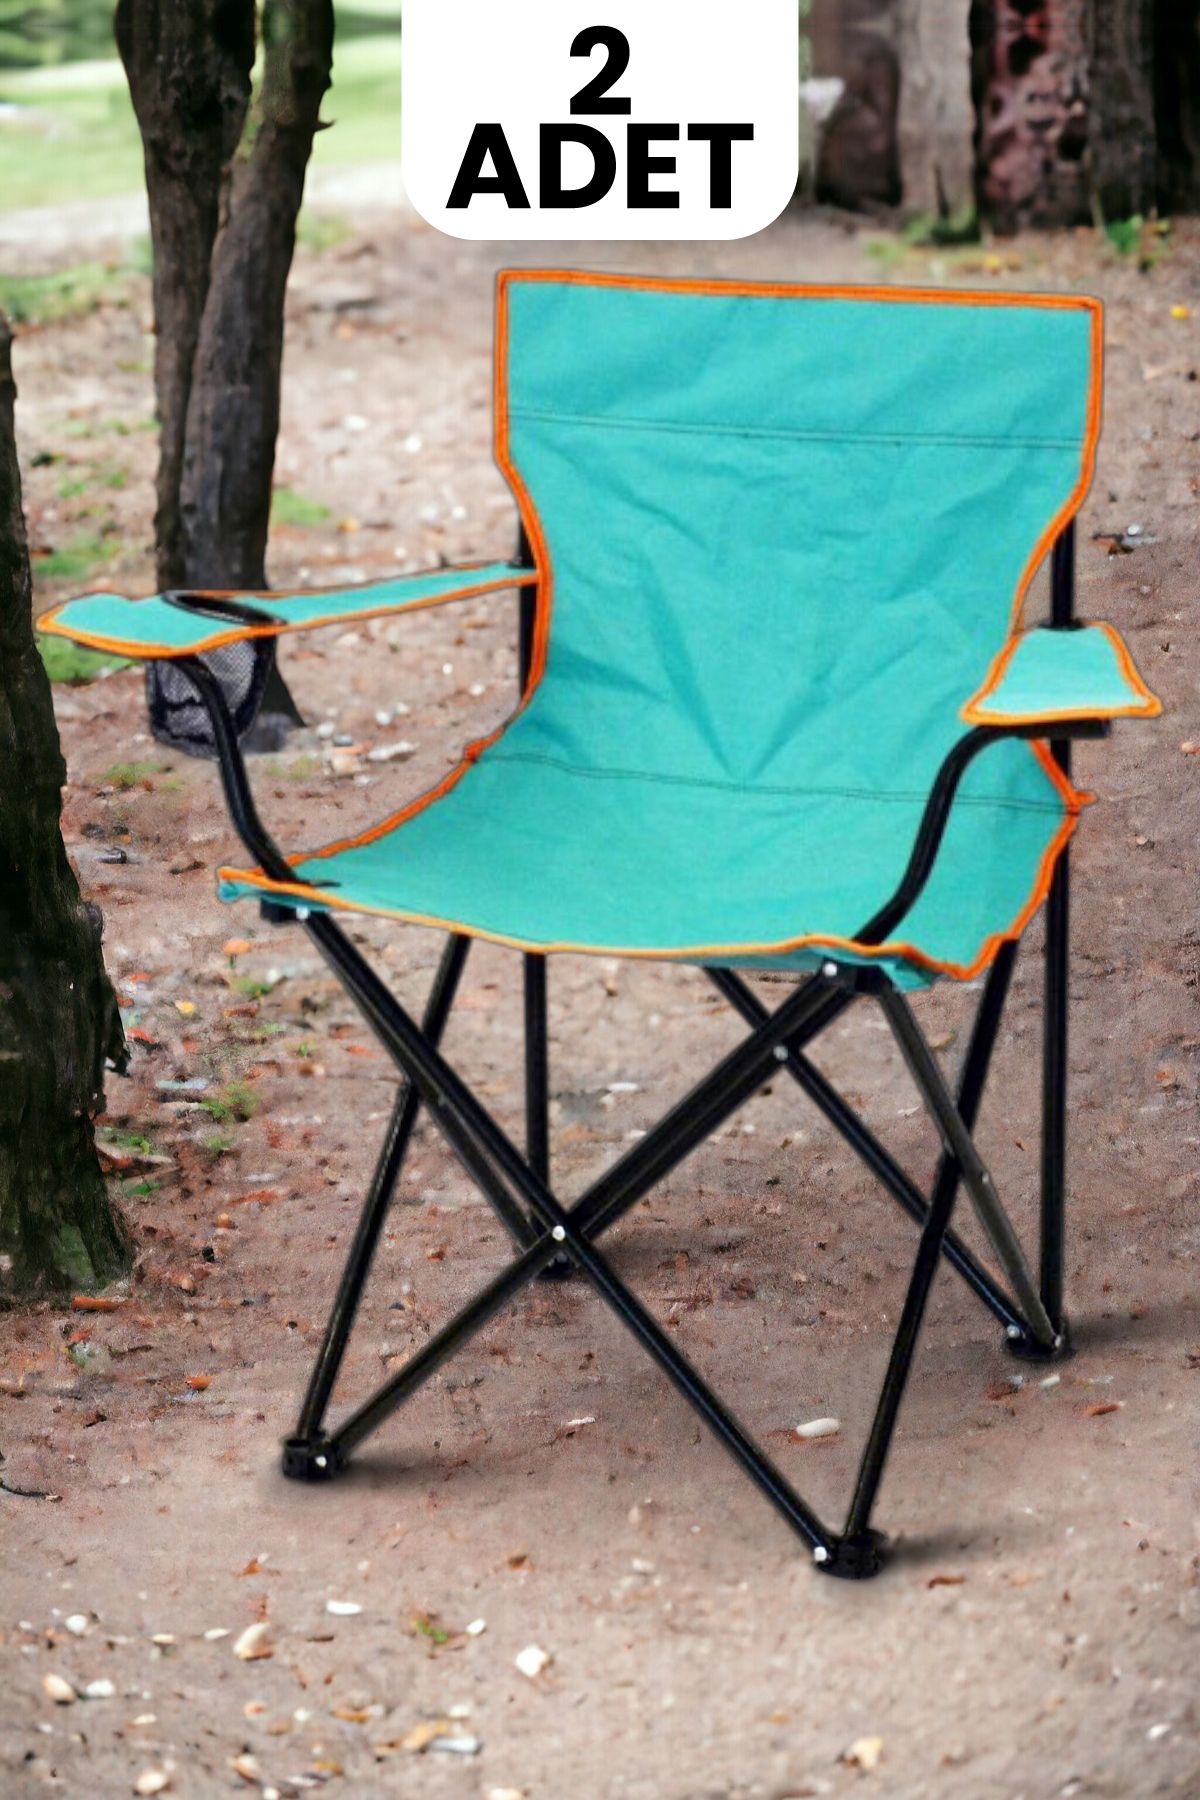 Evmarketi 2 Adet Katlanabilir Piknik Plaj Kamp Sandalyesi Rejisör Koltuğu Çantasız Kutulu